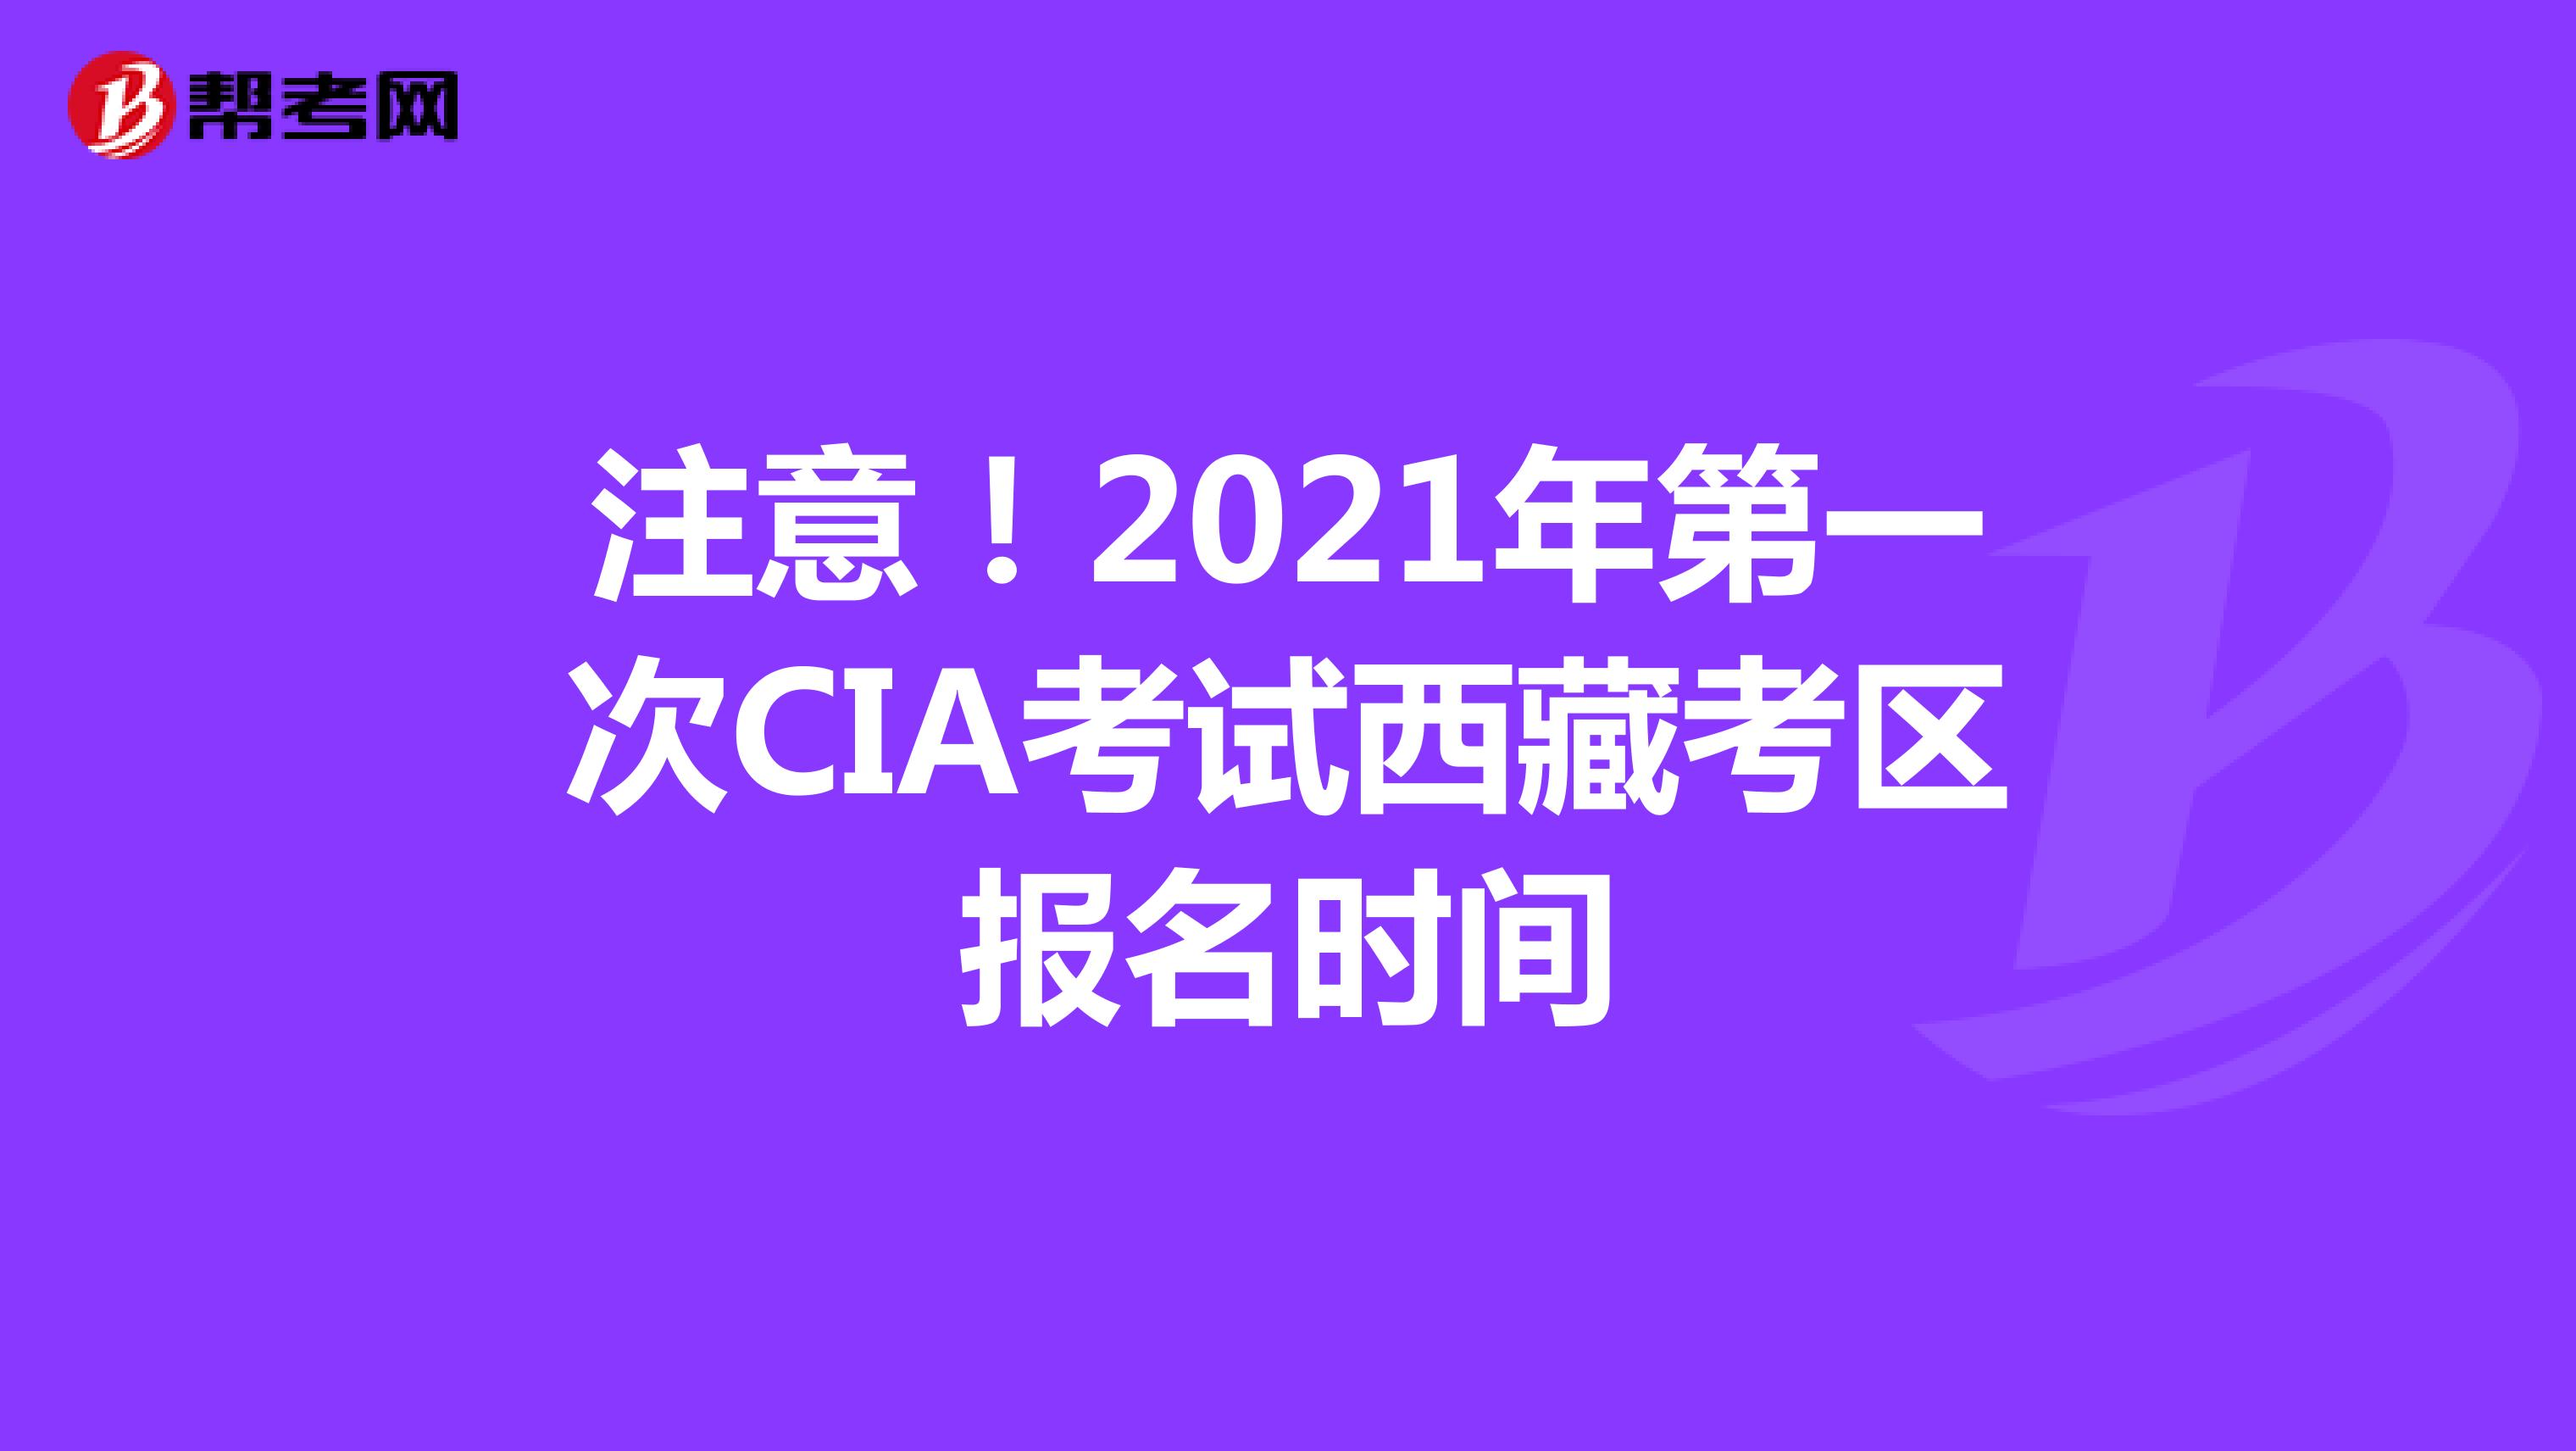 注意！2021年第一次CIA考试西藏考区报名时间